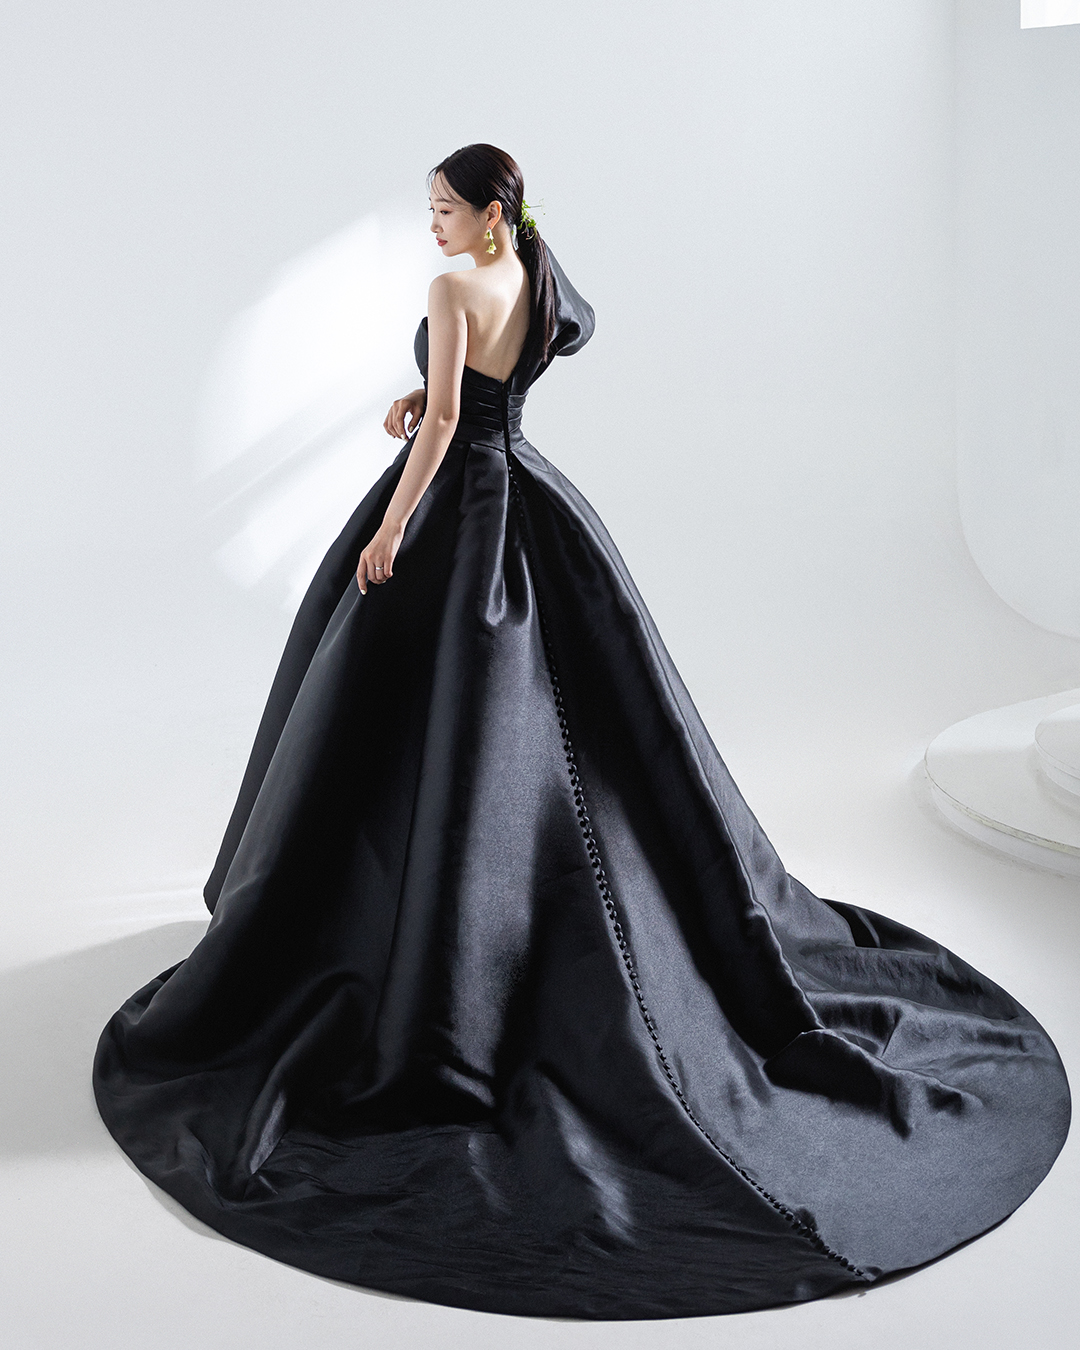 El vestido negro es la sensación, el dejó de estar de moda para las novias en Estados Unidos Moda | La | El Universo